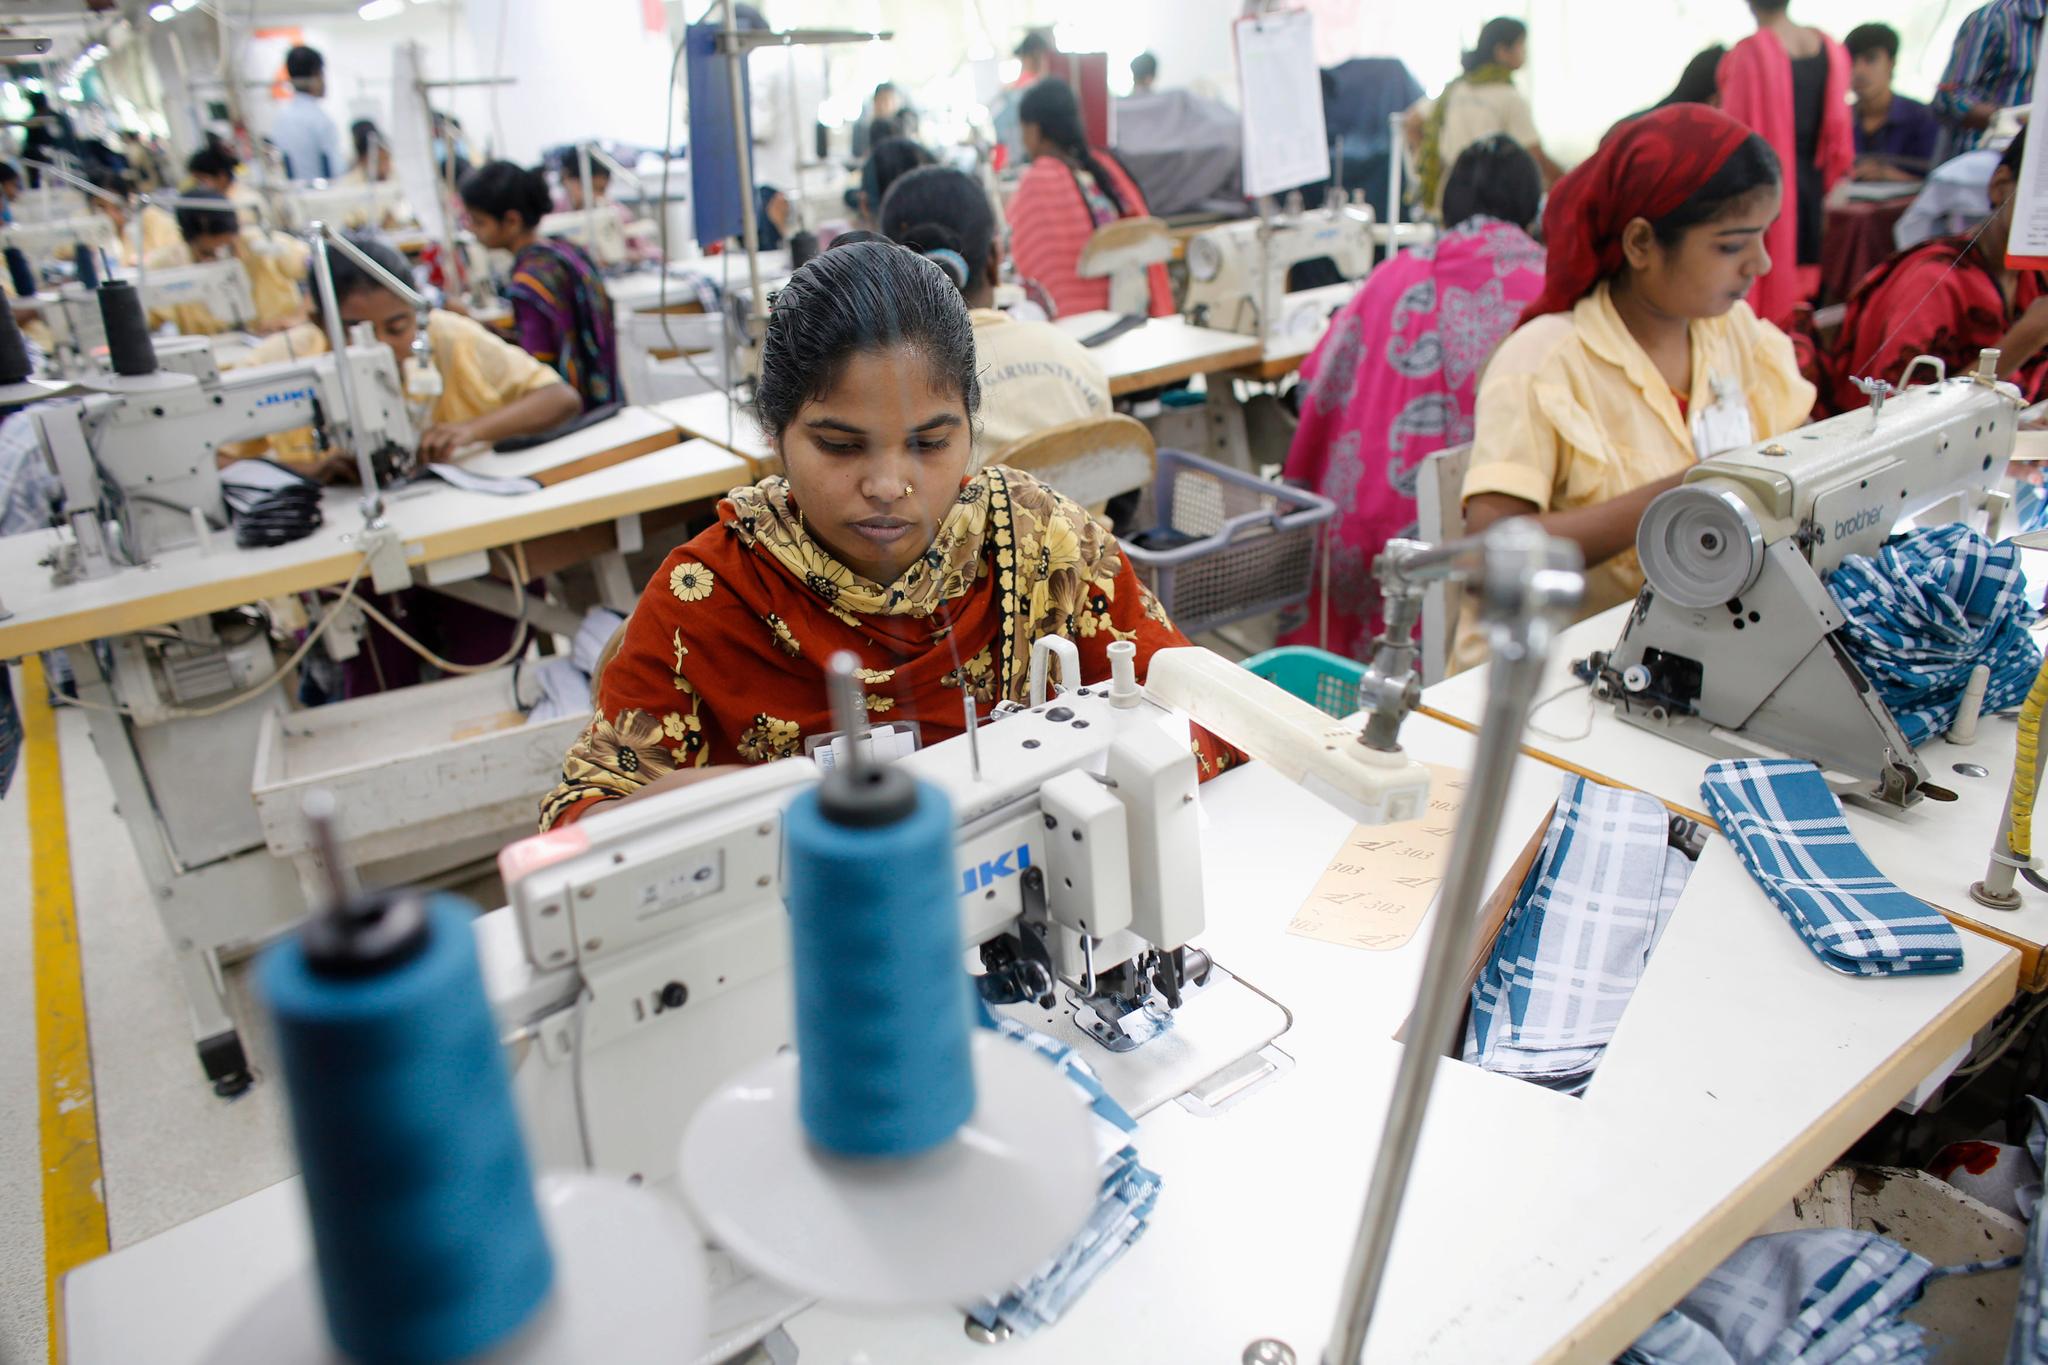 Tekstilindustrien i Bangladesh sysselsetter flere millioner mennesker, men lønnsnivået er lavt.